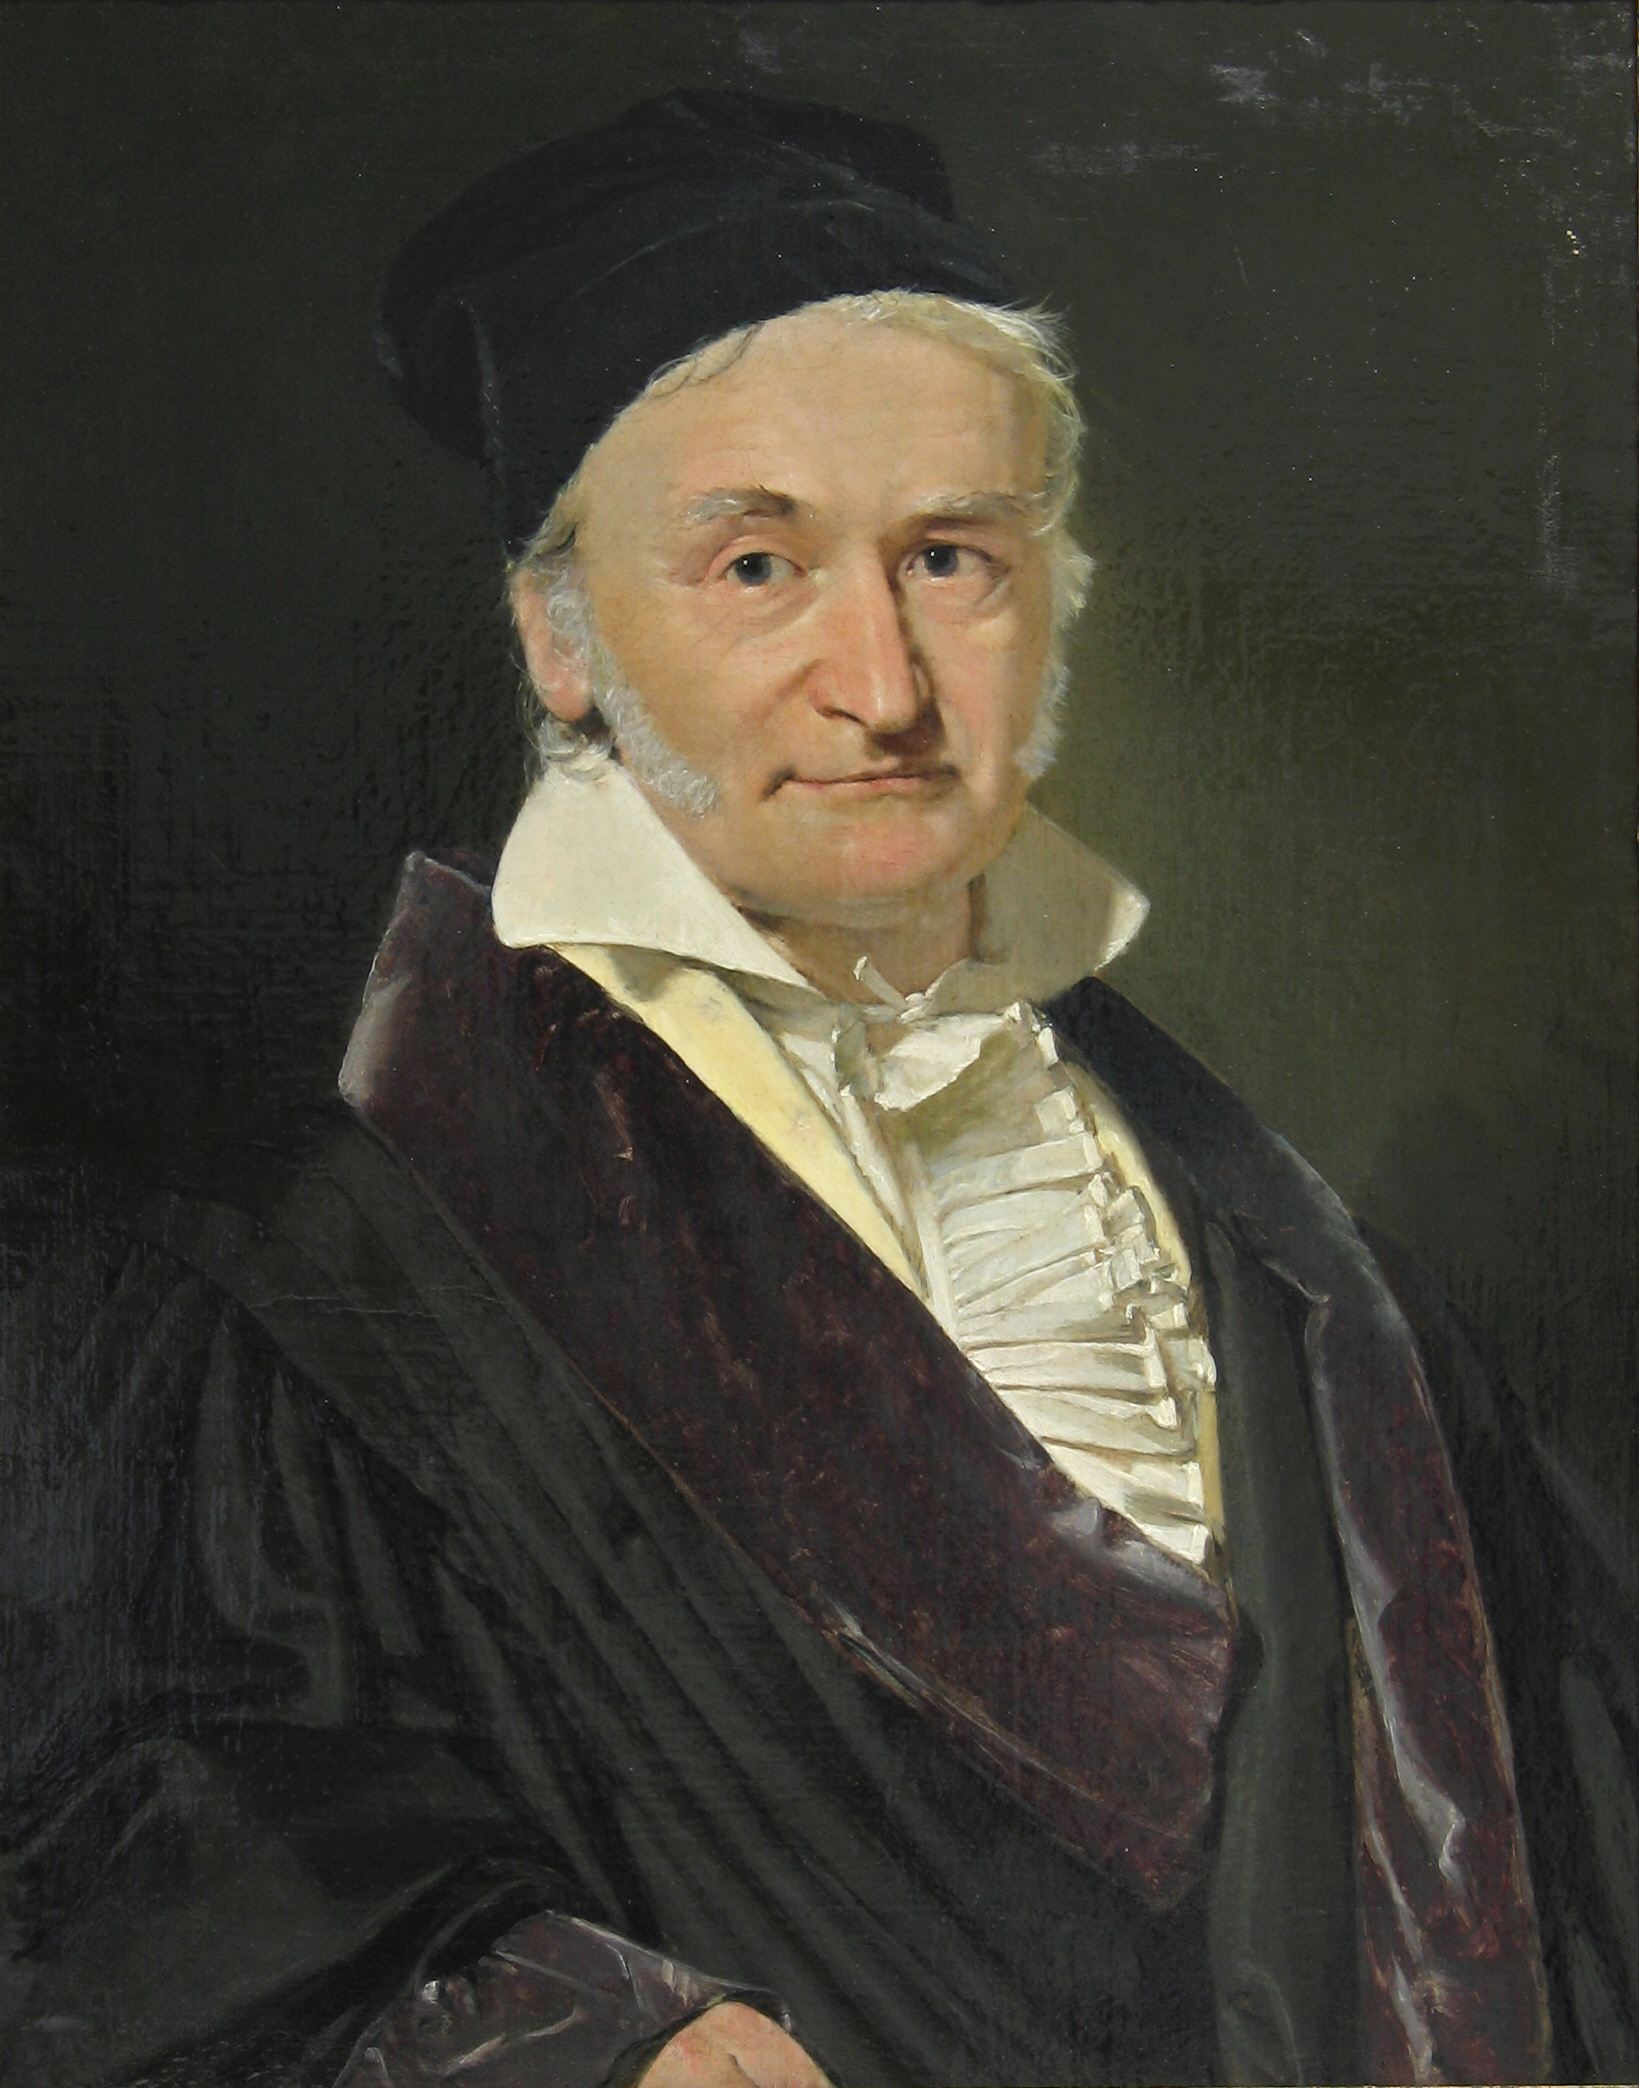 http://upload.wikimedia.org/wikipedia/commons/e/ec/Carl_Friedrich_Gauss_1840_by_Jensen.jpg